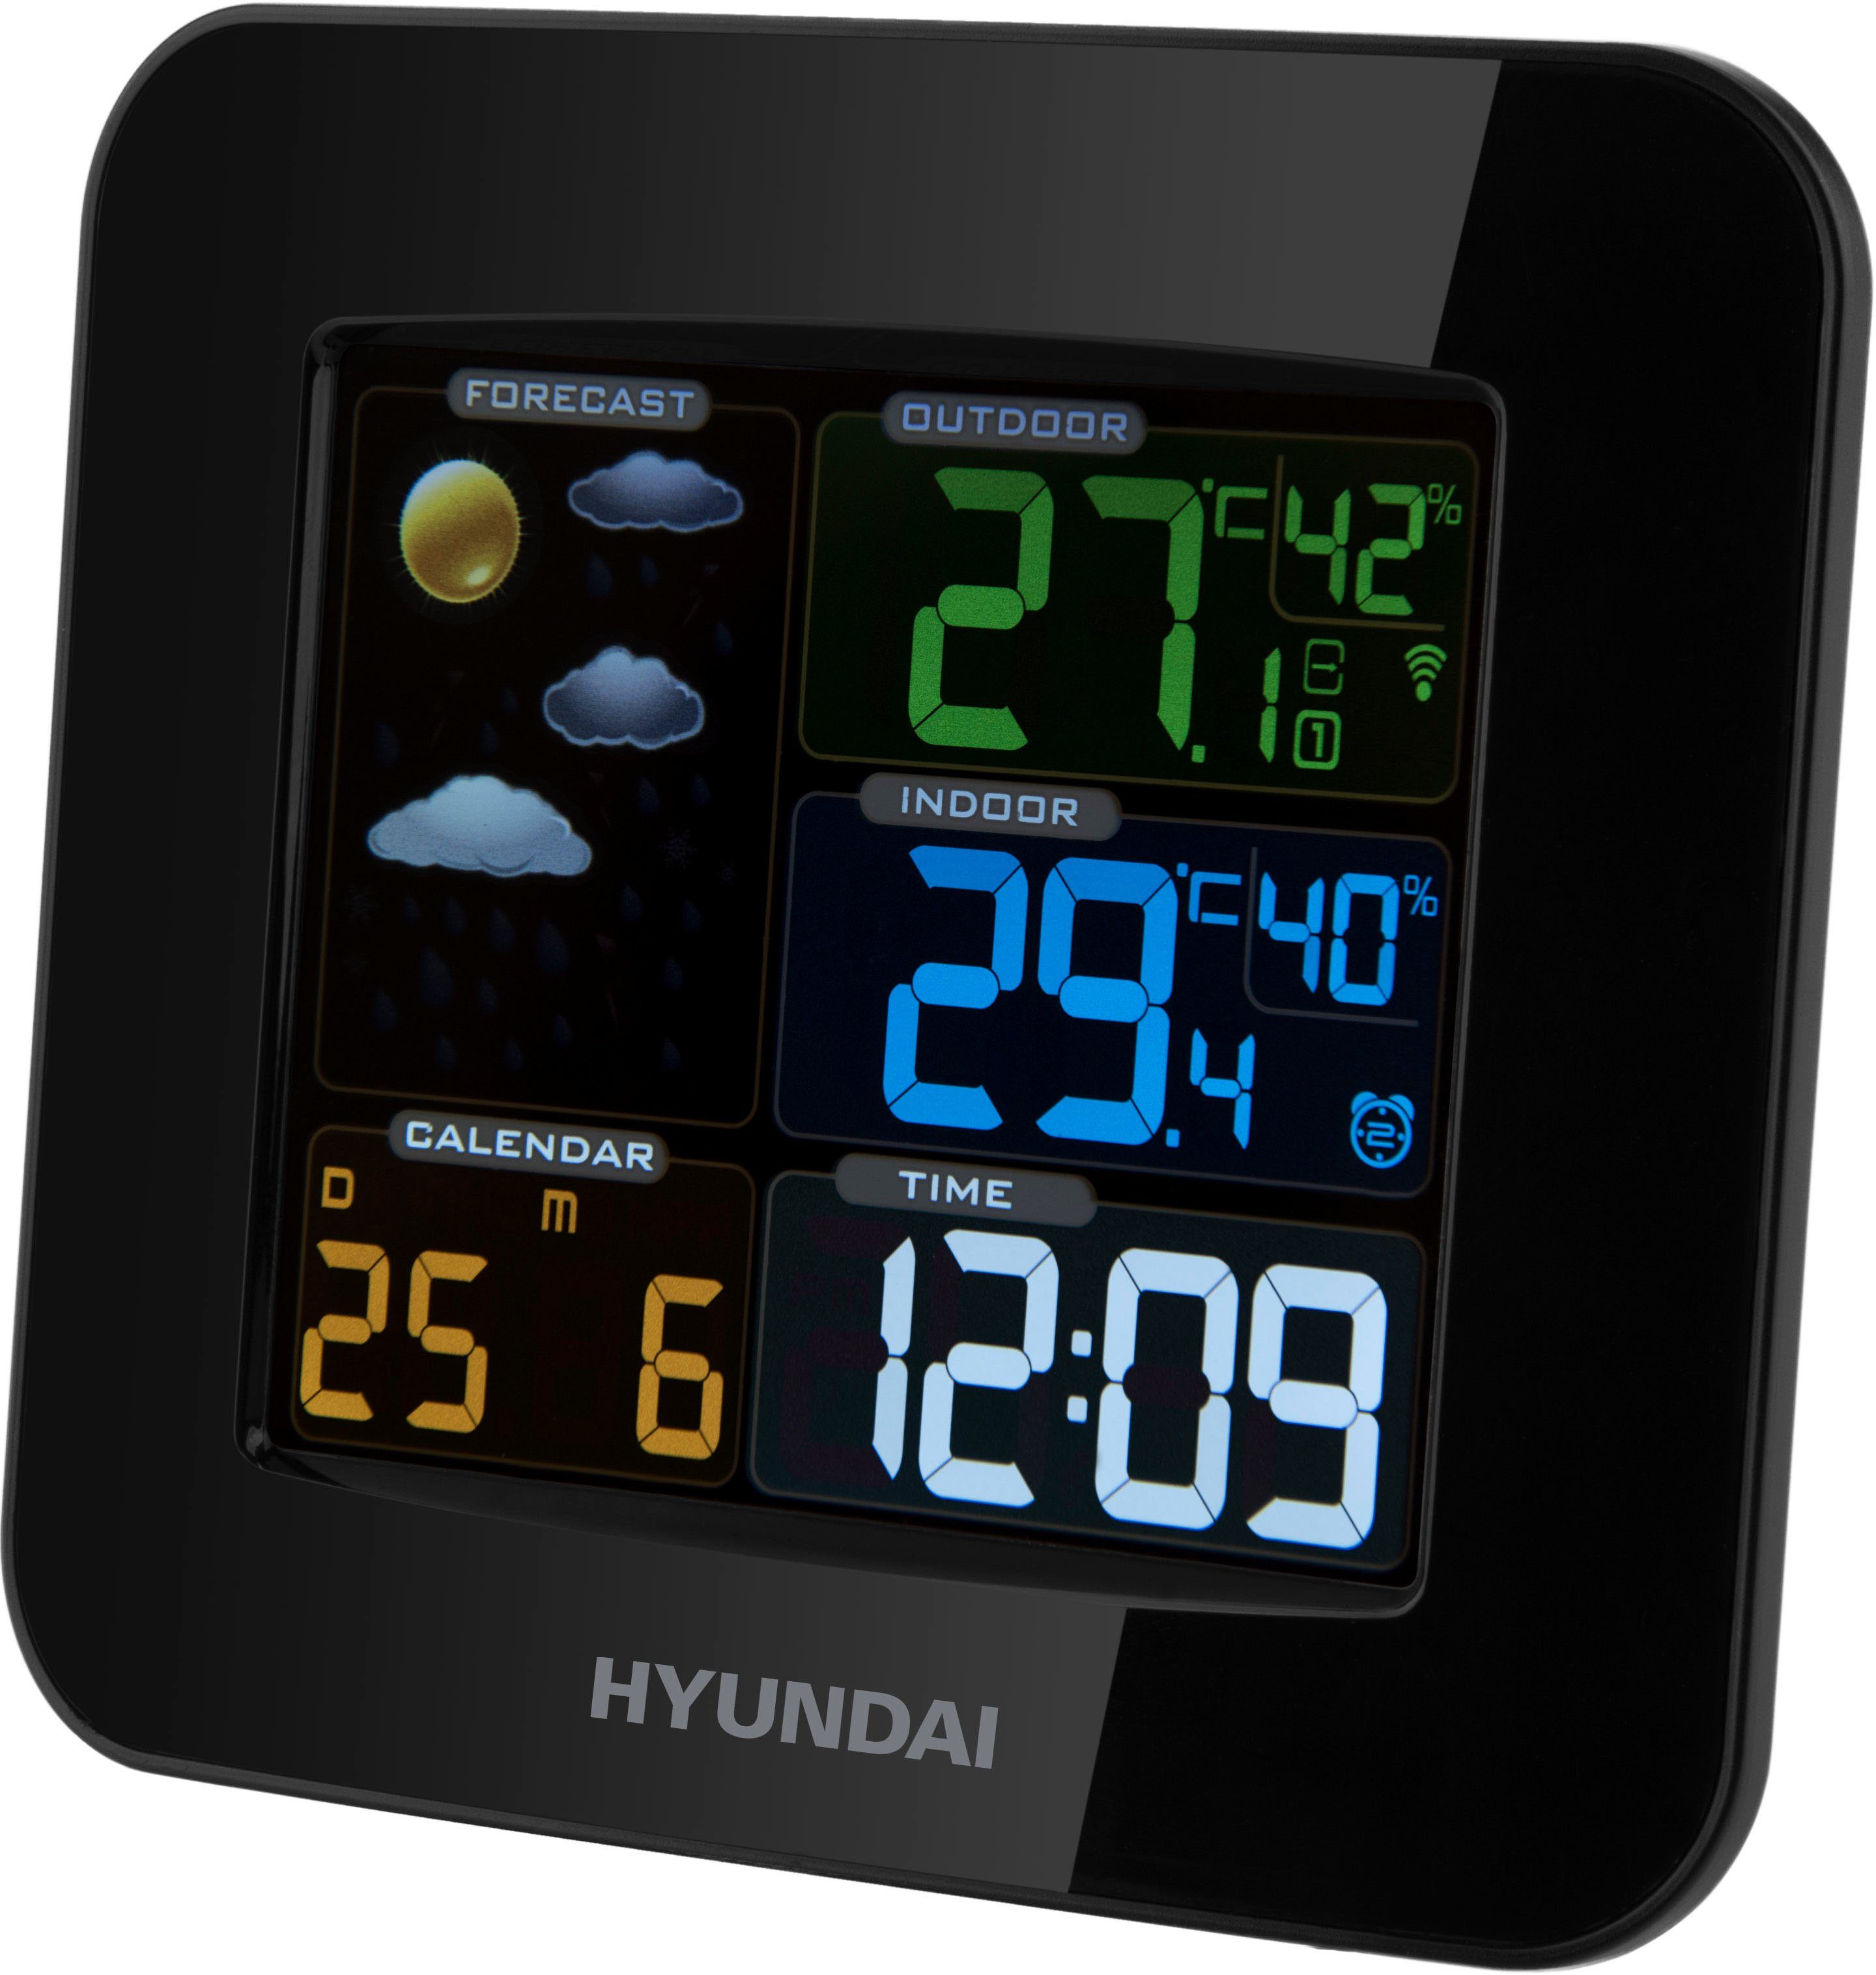 (mit Hyundai Außensensor) Hyundai WS8446 Wetterstation